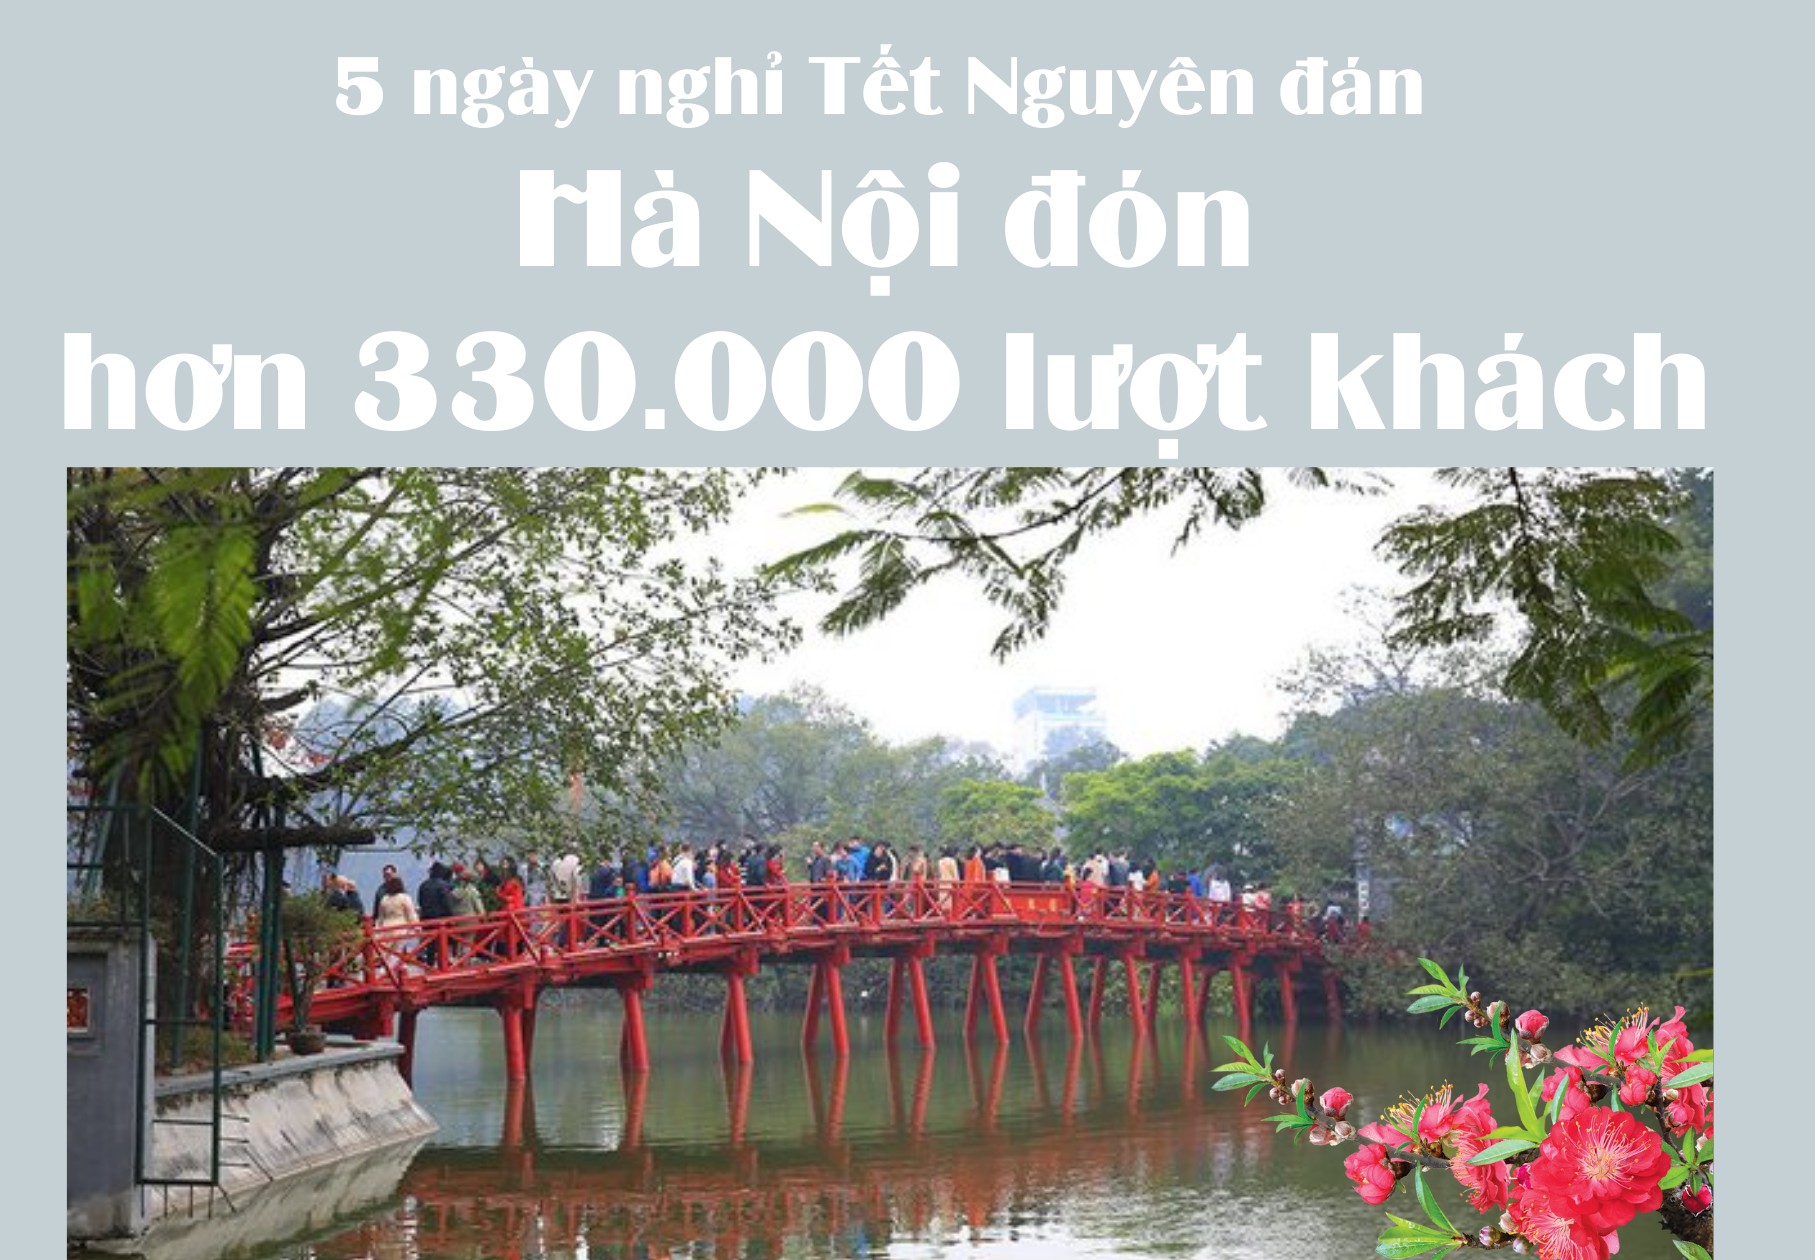 Hơn 330.000 lượt khách đến Hà Nội dịp Tết Nguyên đán